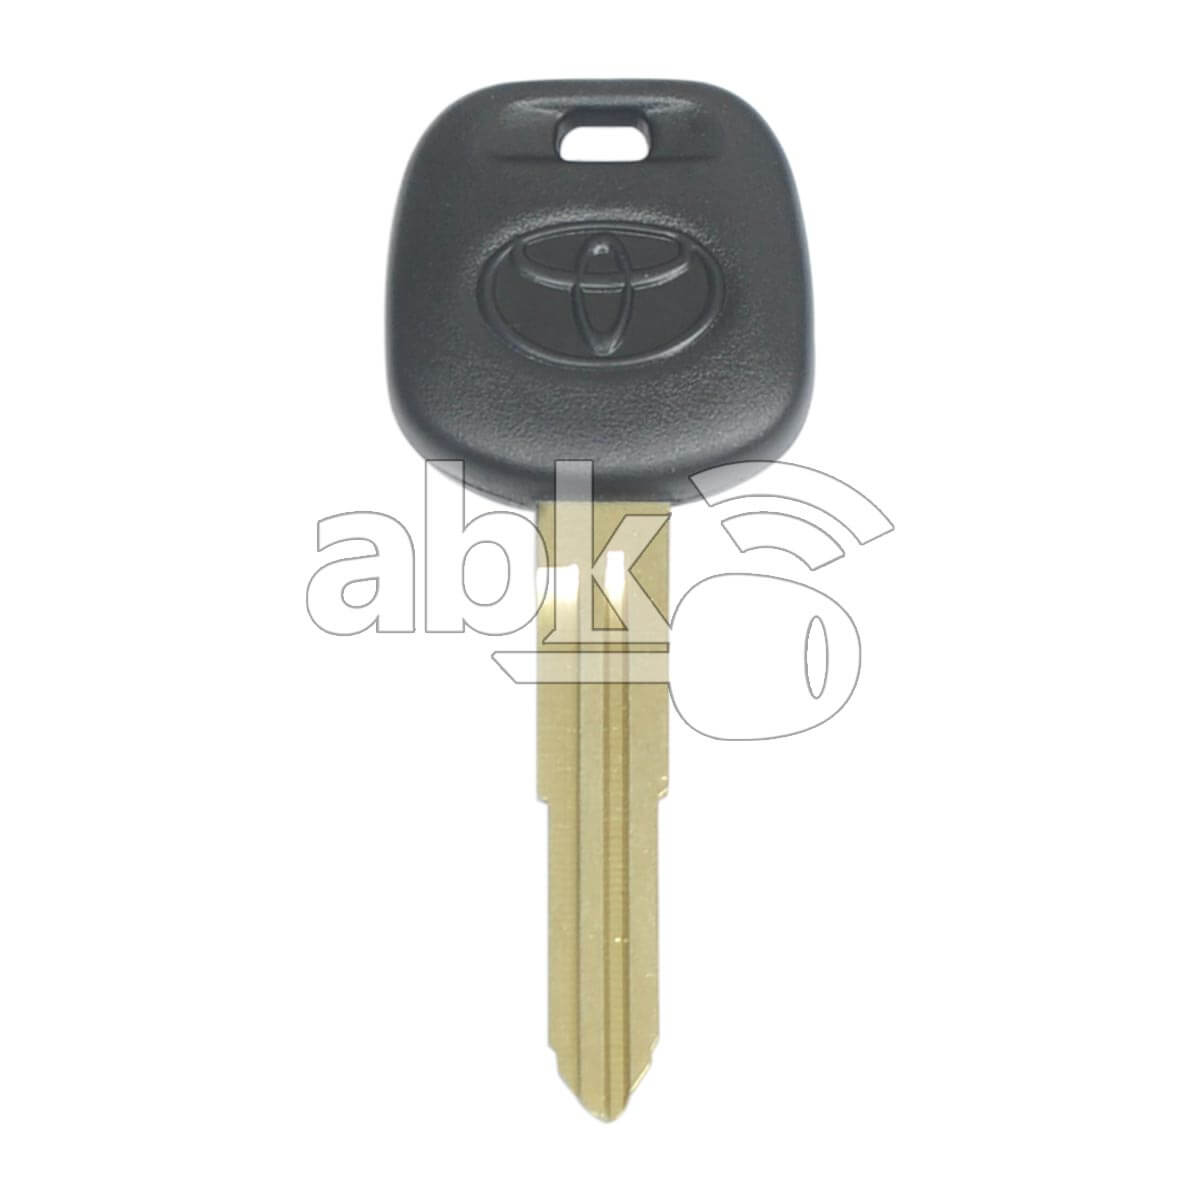 Toyota Chip Less Key TOY41R - ABK-598 - ABKEYS.COM